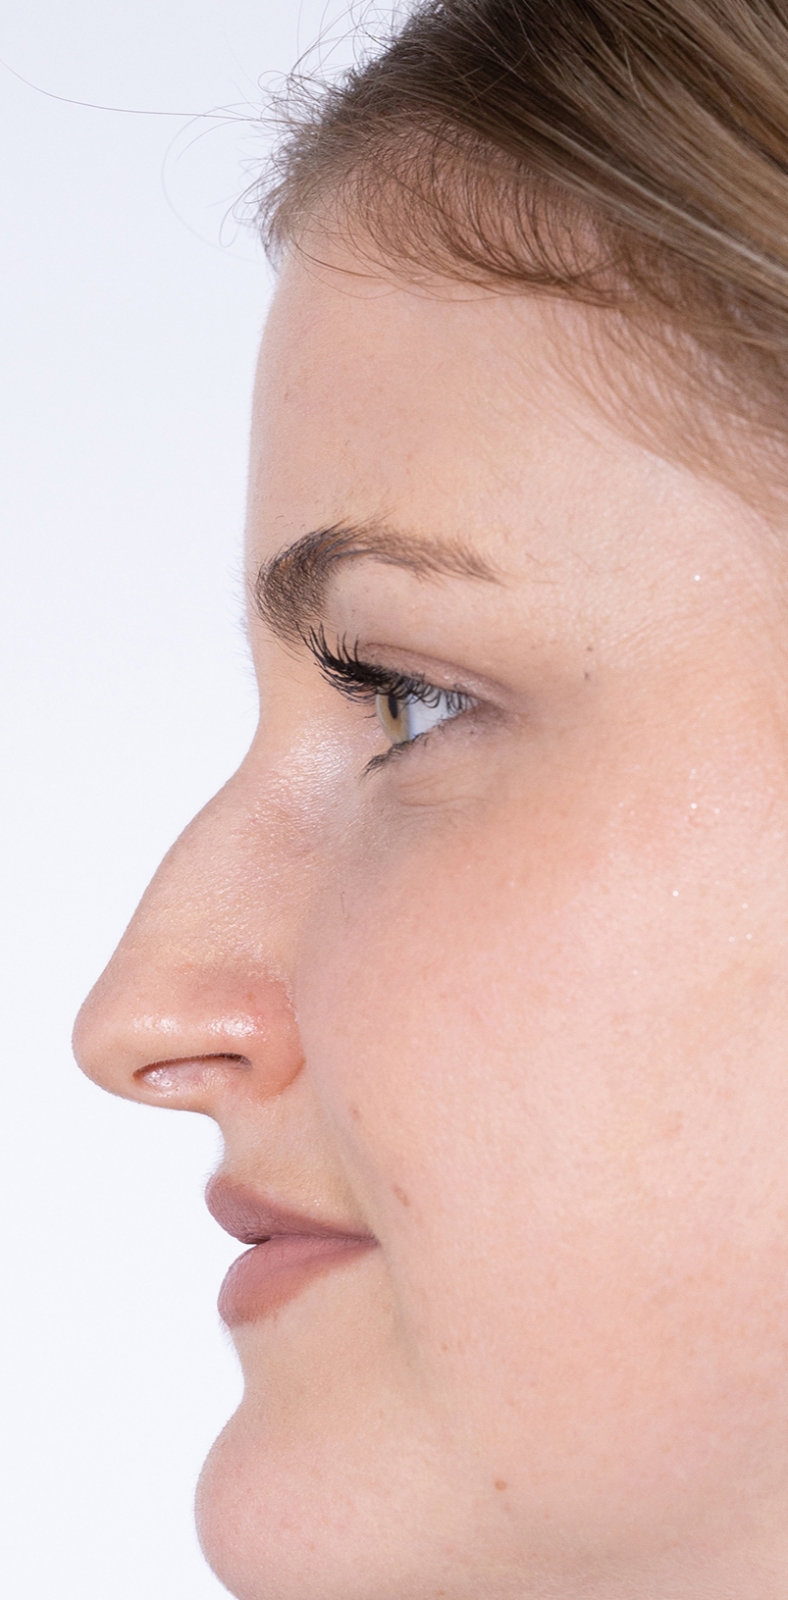 Nekirurška korekcija nosa - prije, sl. 1 2022